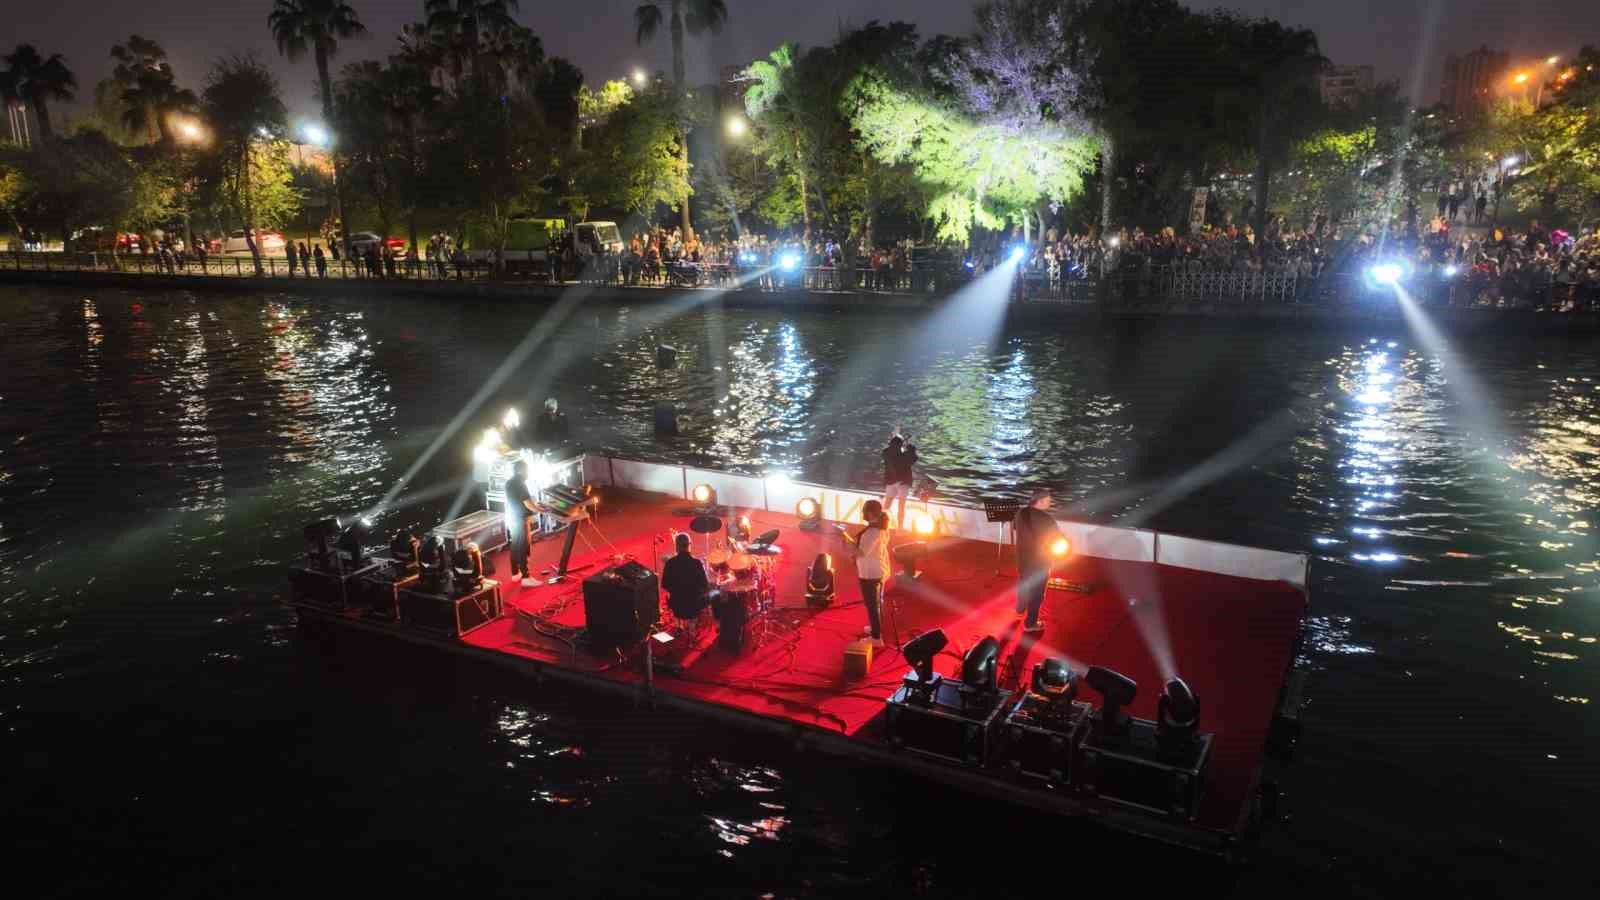 Seyhan Nehrindeki etkinlikler karnavalı renklendiriyor
